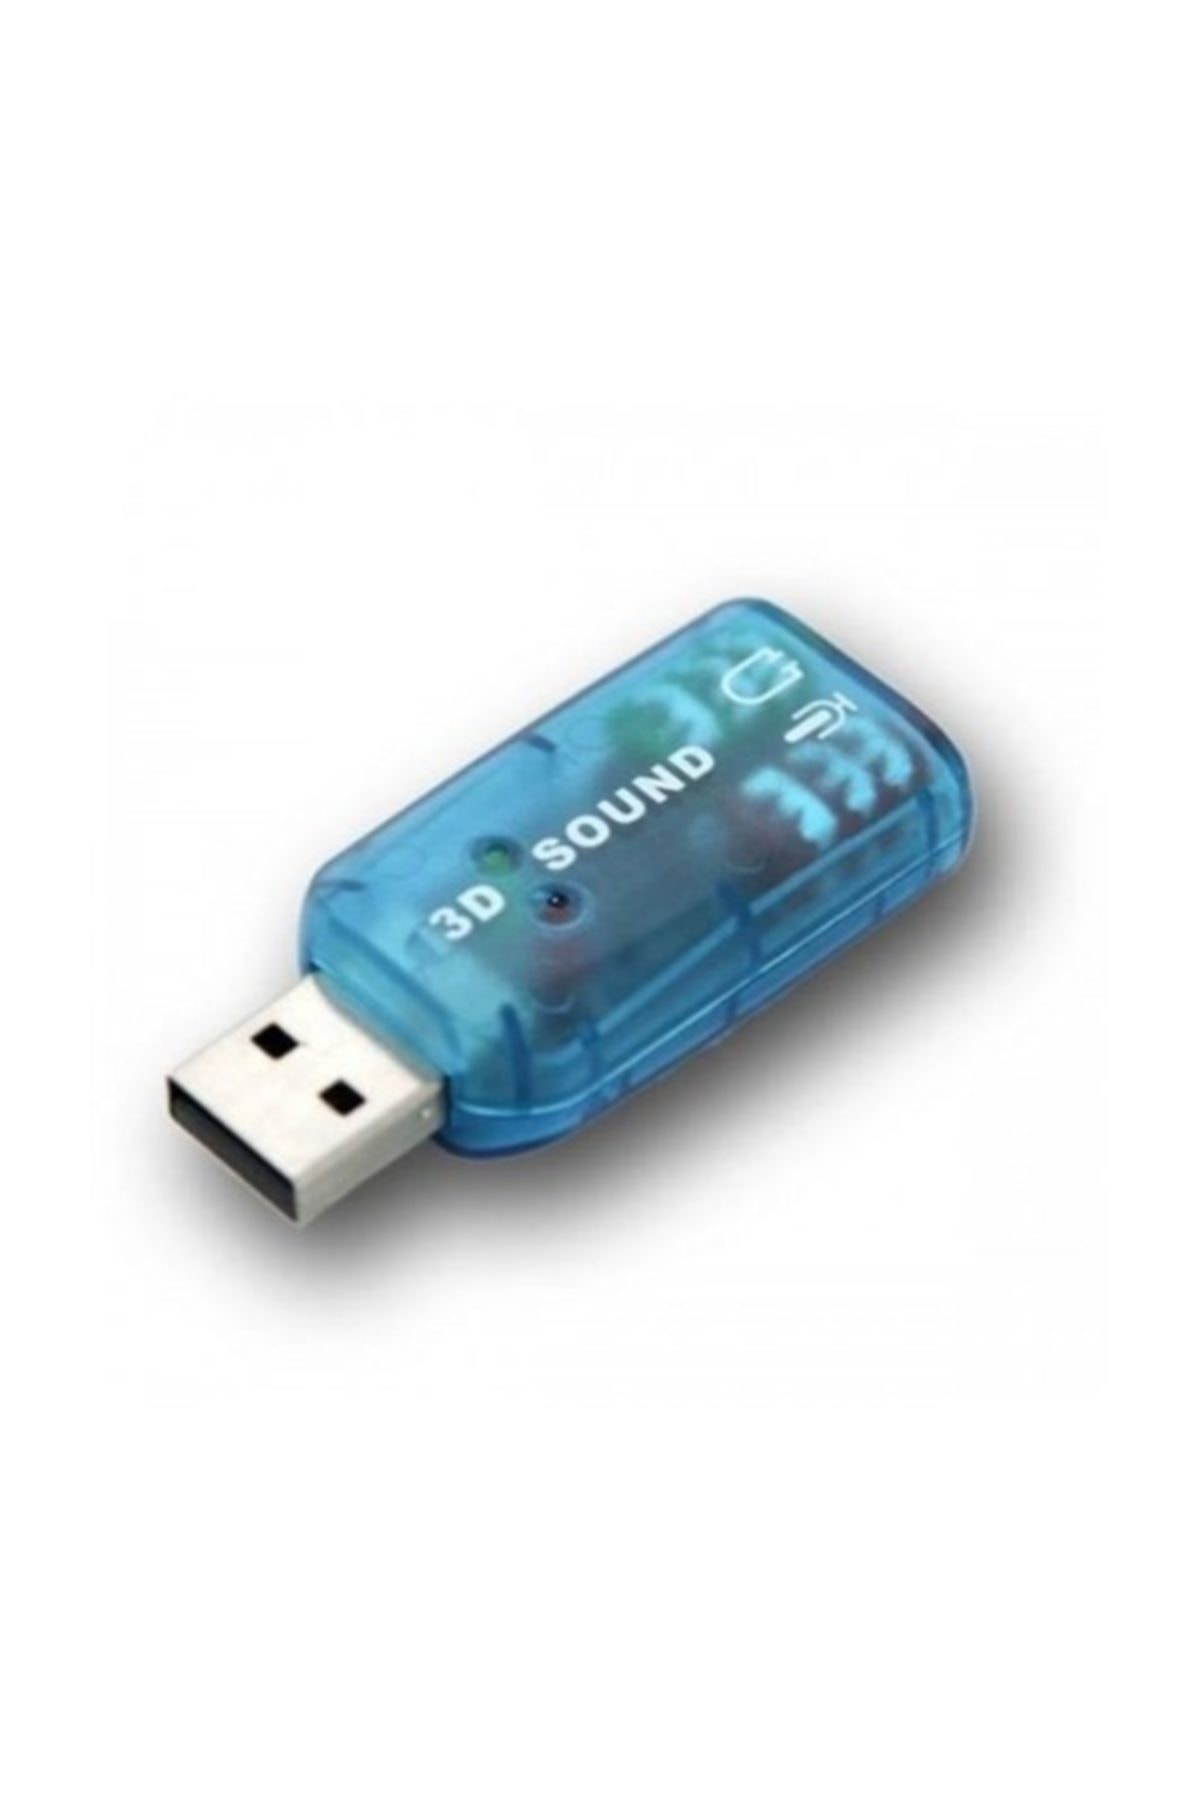 CLZ192 USB SES KART 2.1 KANAL 3D PL-8620 (4172)